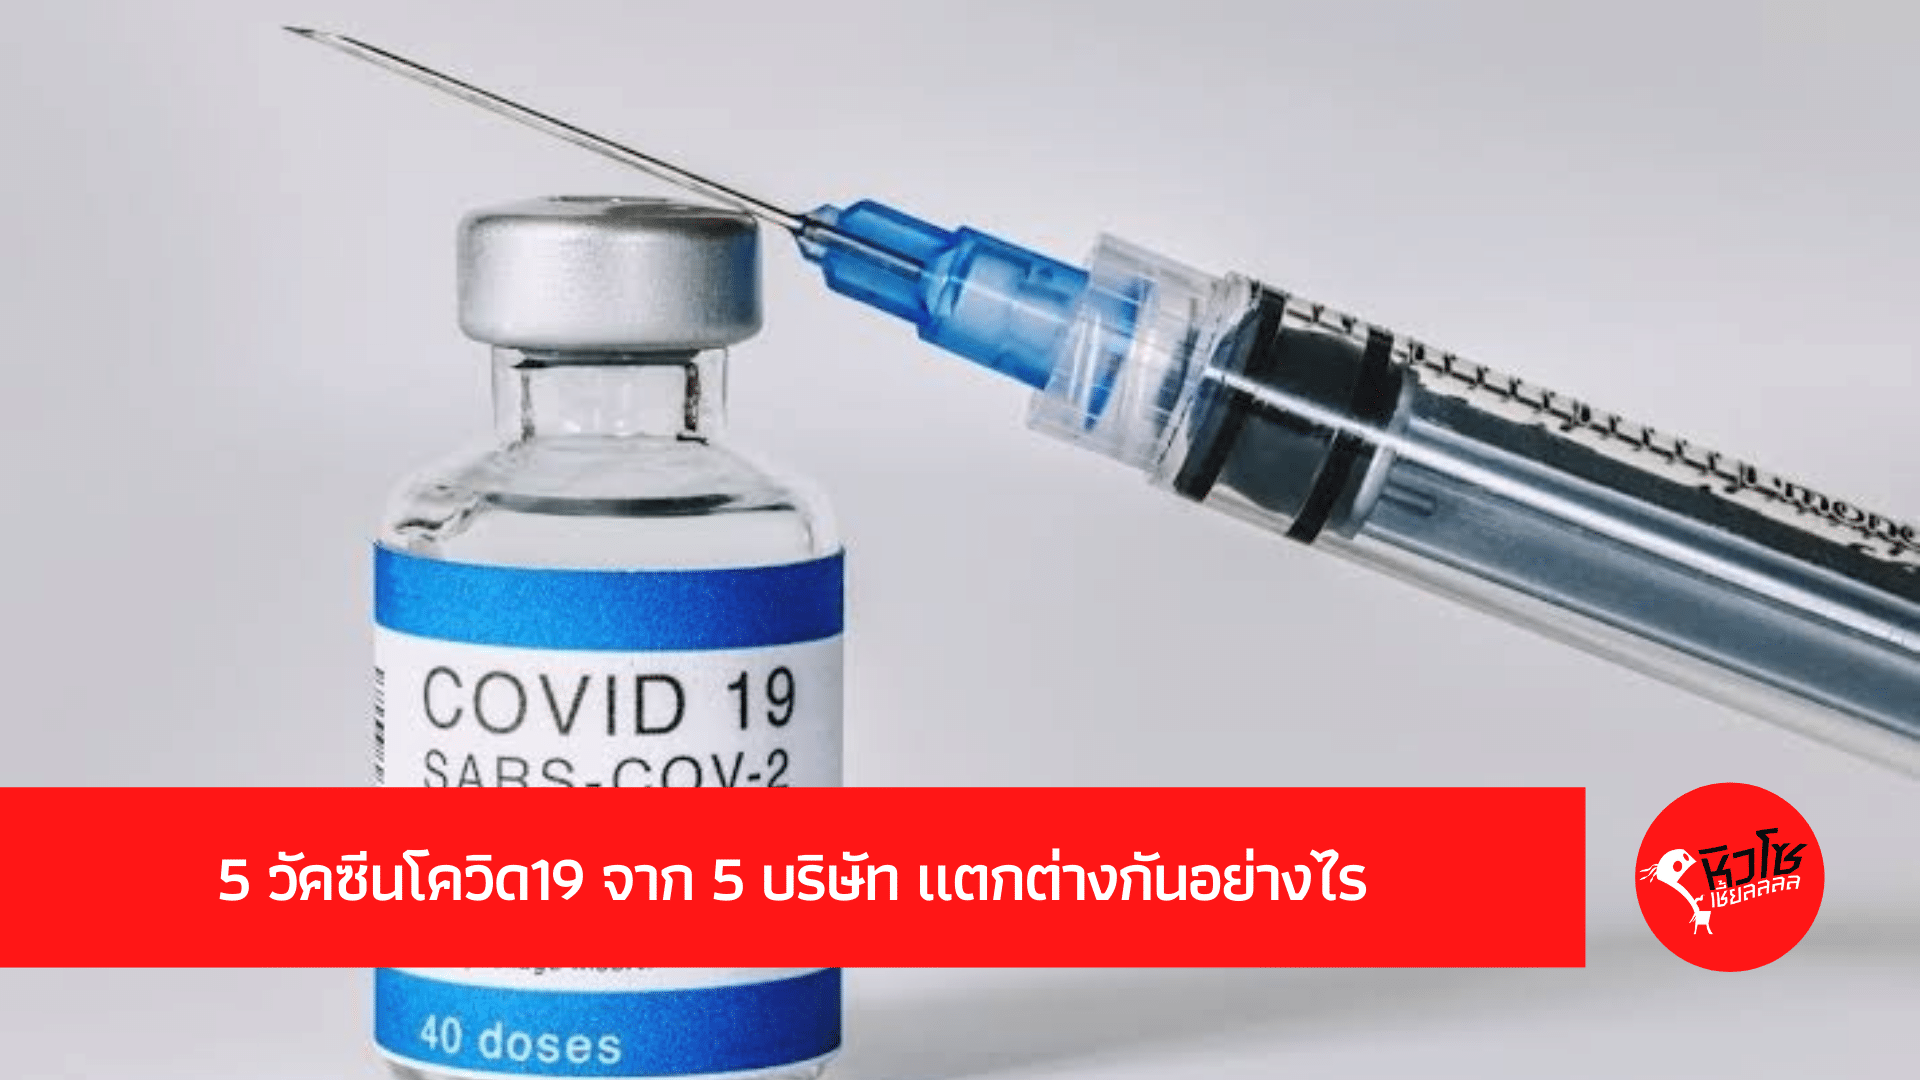 5 วัคซีนโควิด19 จาก 5 บริษัท แตกต่างกันอย่างไร